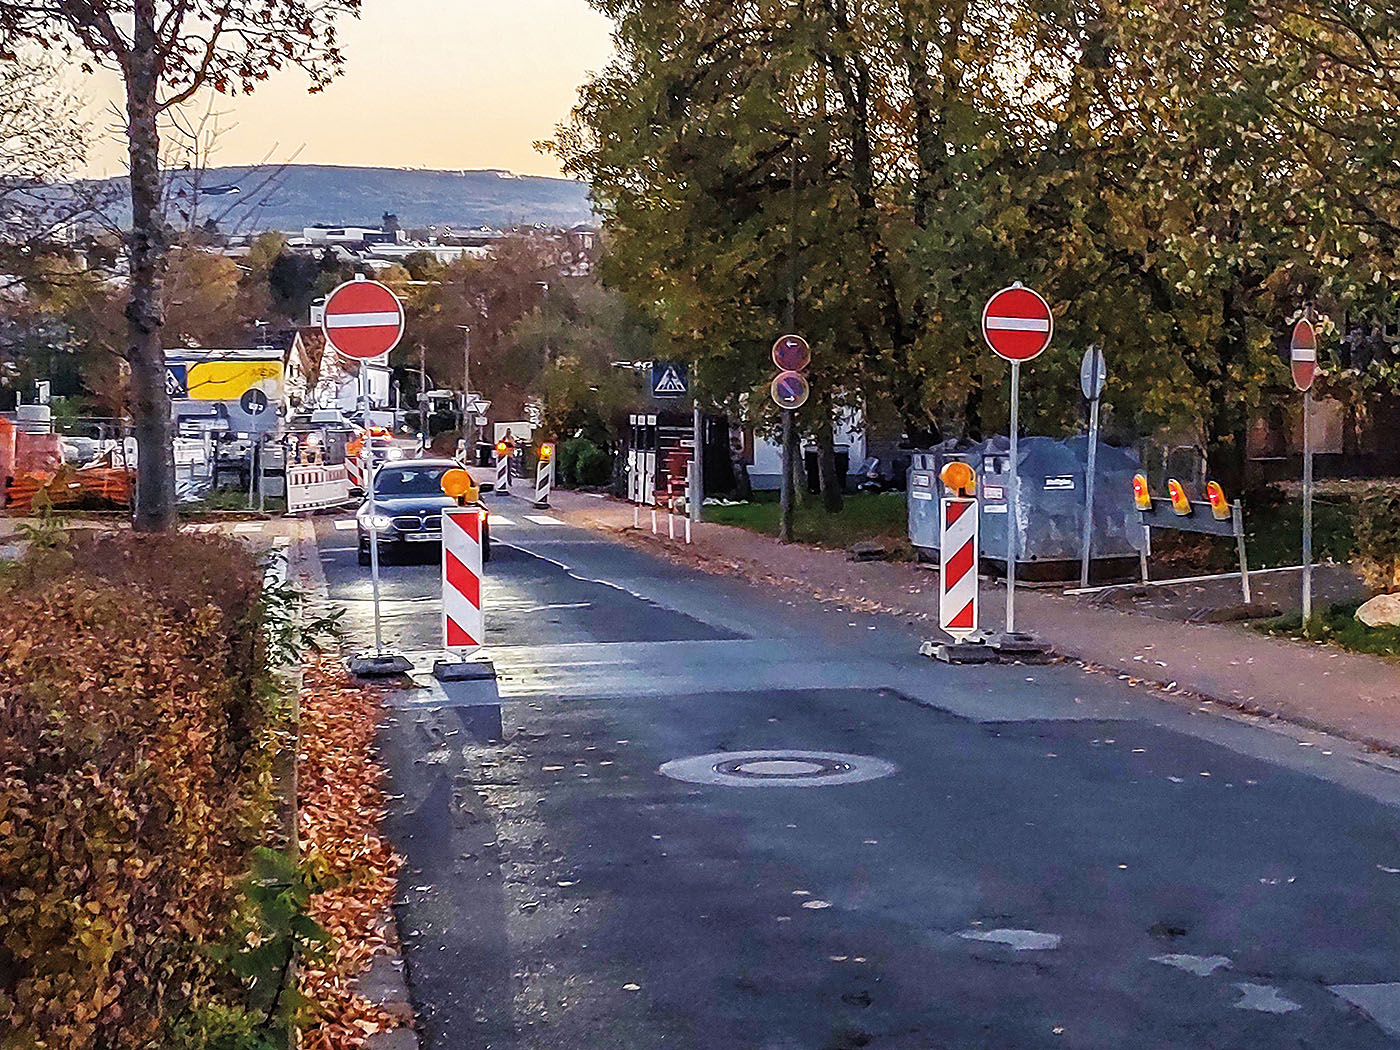 Wilhelm-Martin-Dienstbach-Straße in Usingen. Situation von Norden
kommend: Verbot der Einfahrt ohne Umleitung. Platz wäre genug für
eine Freigabe. 